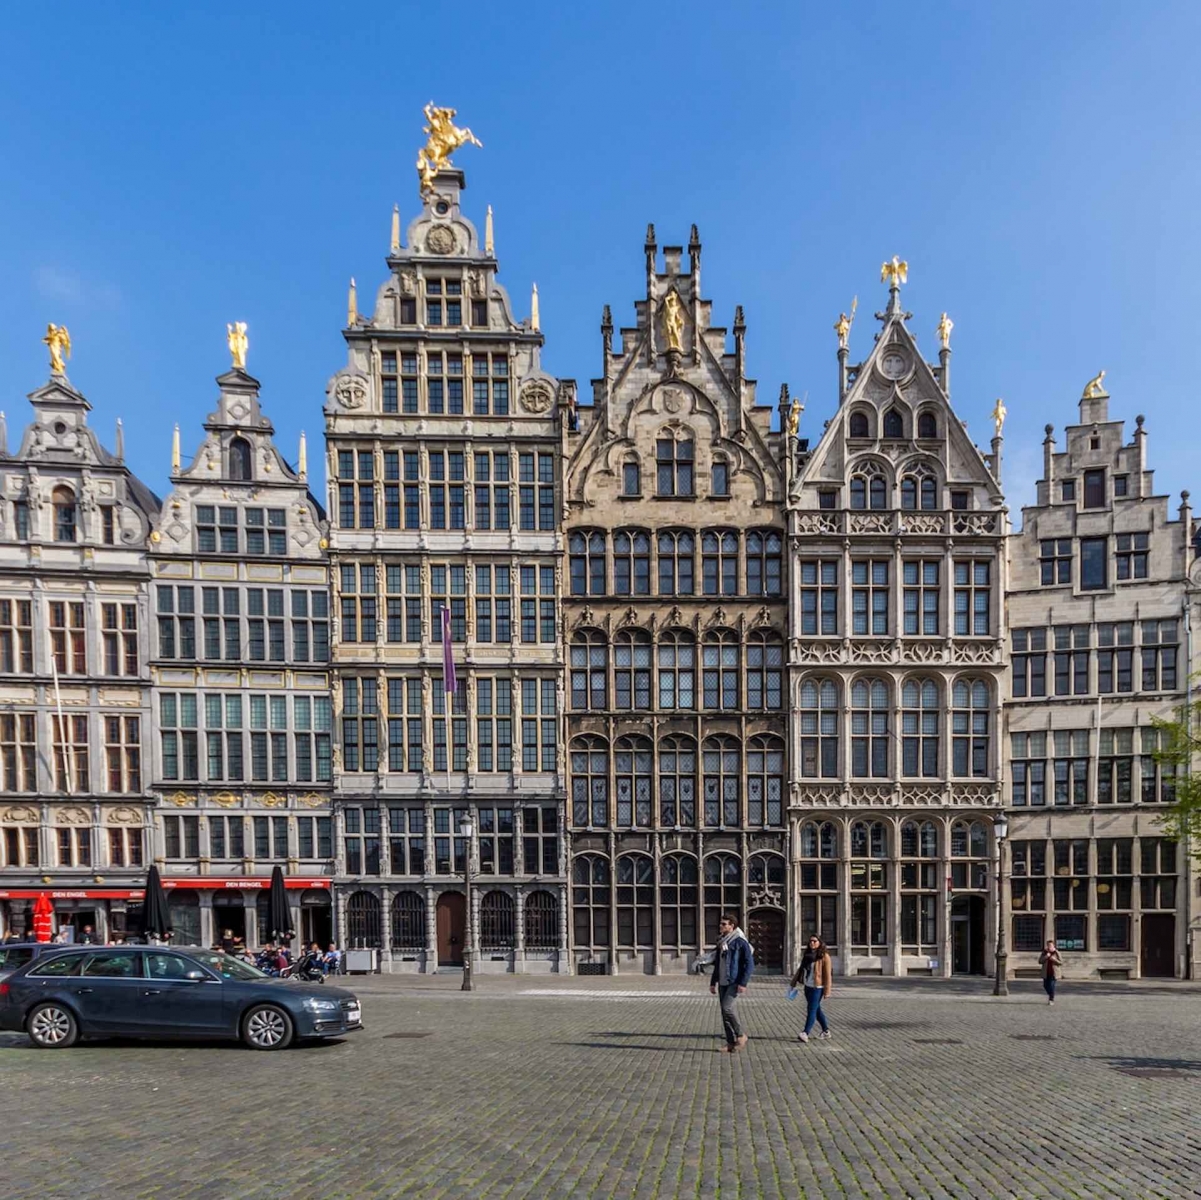 Antwerp architecture on Grote Markt